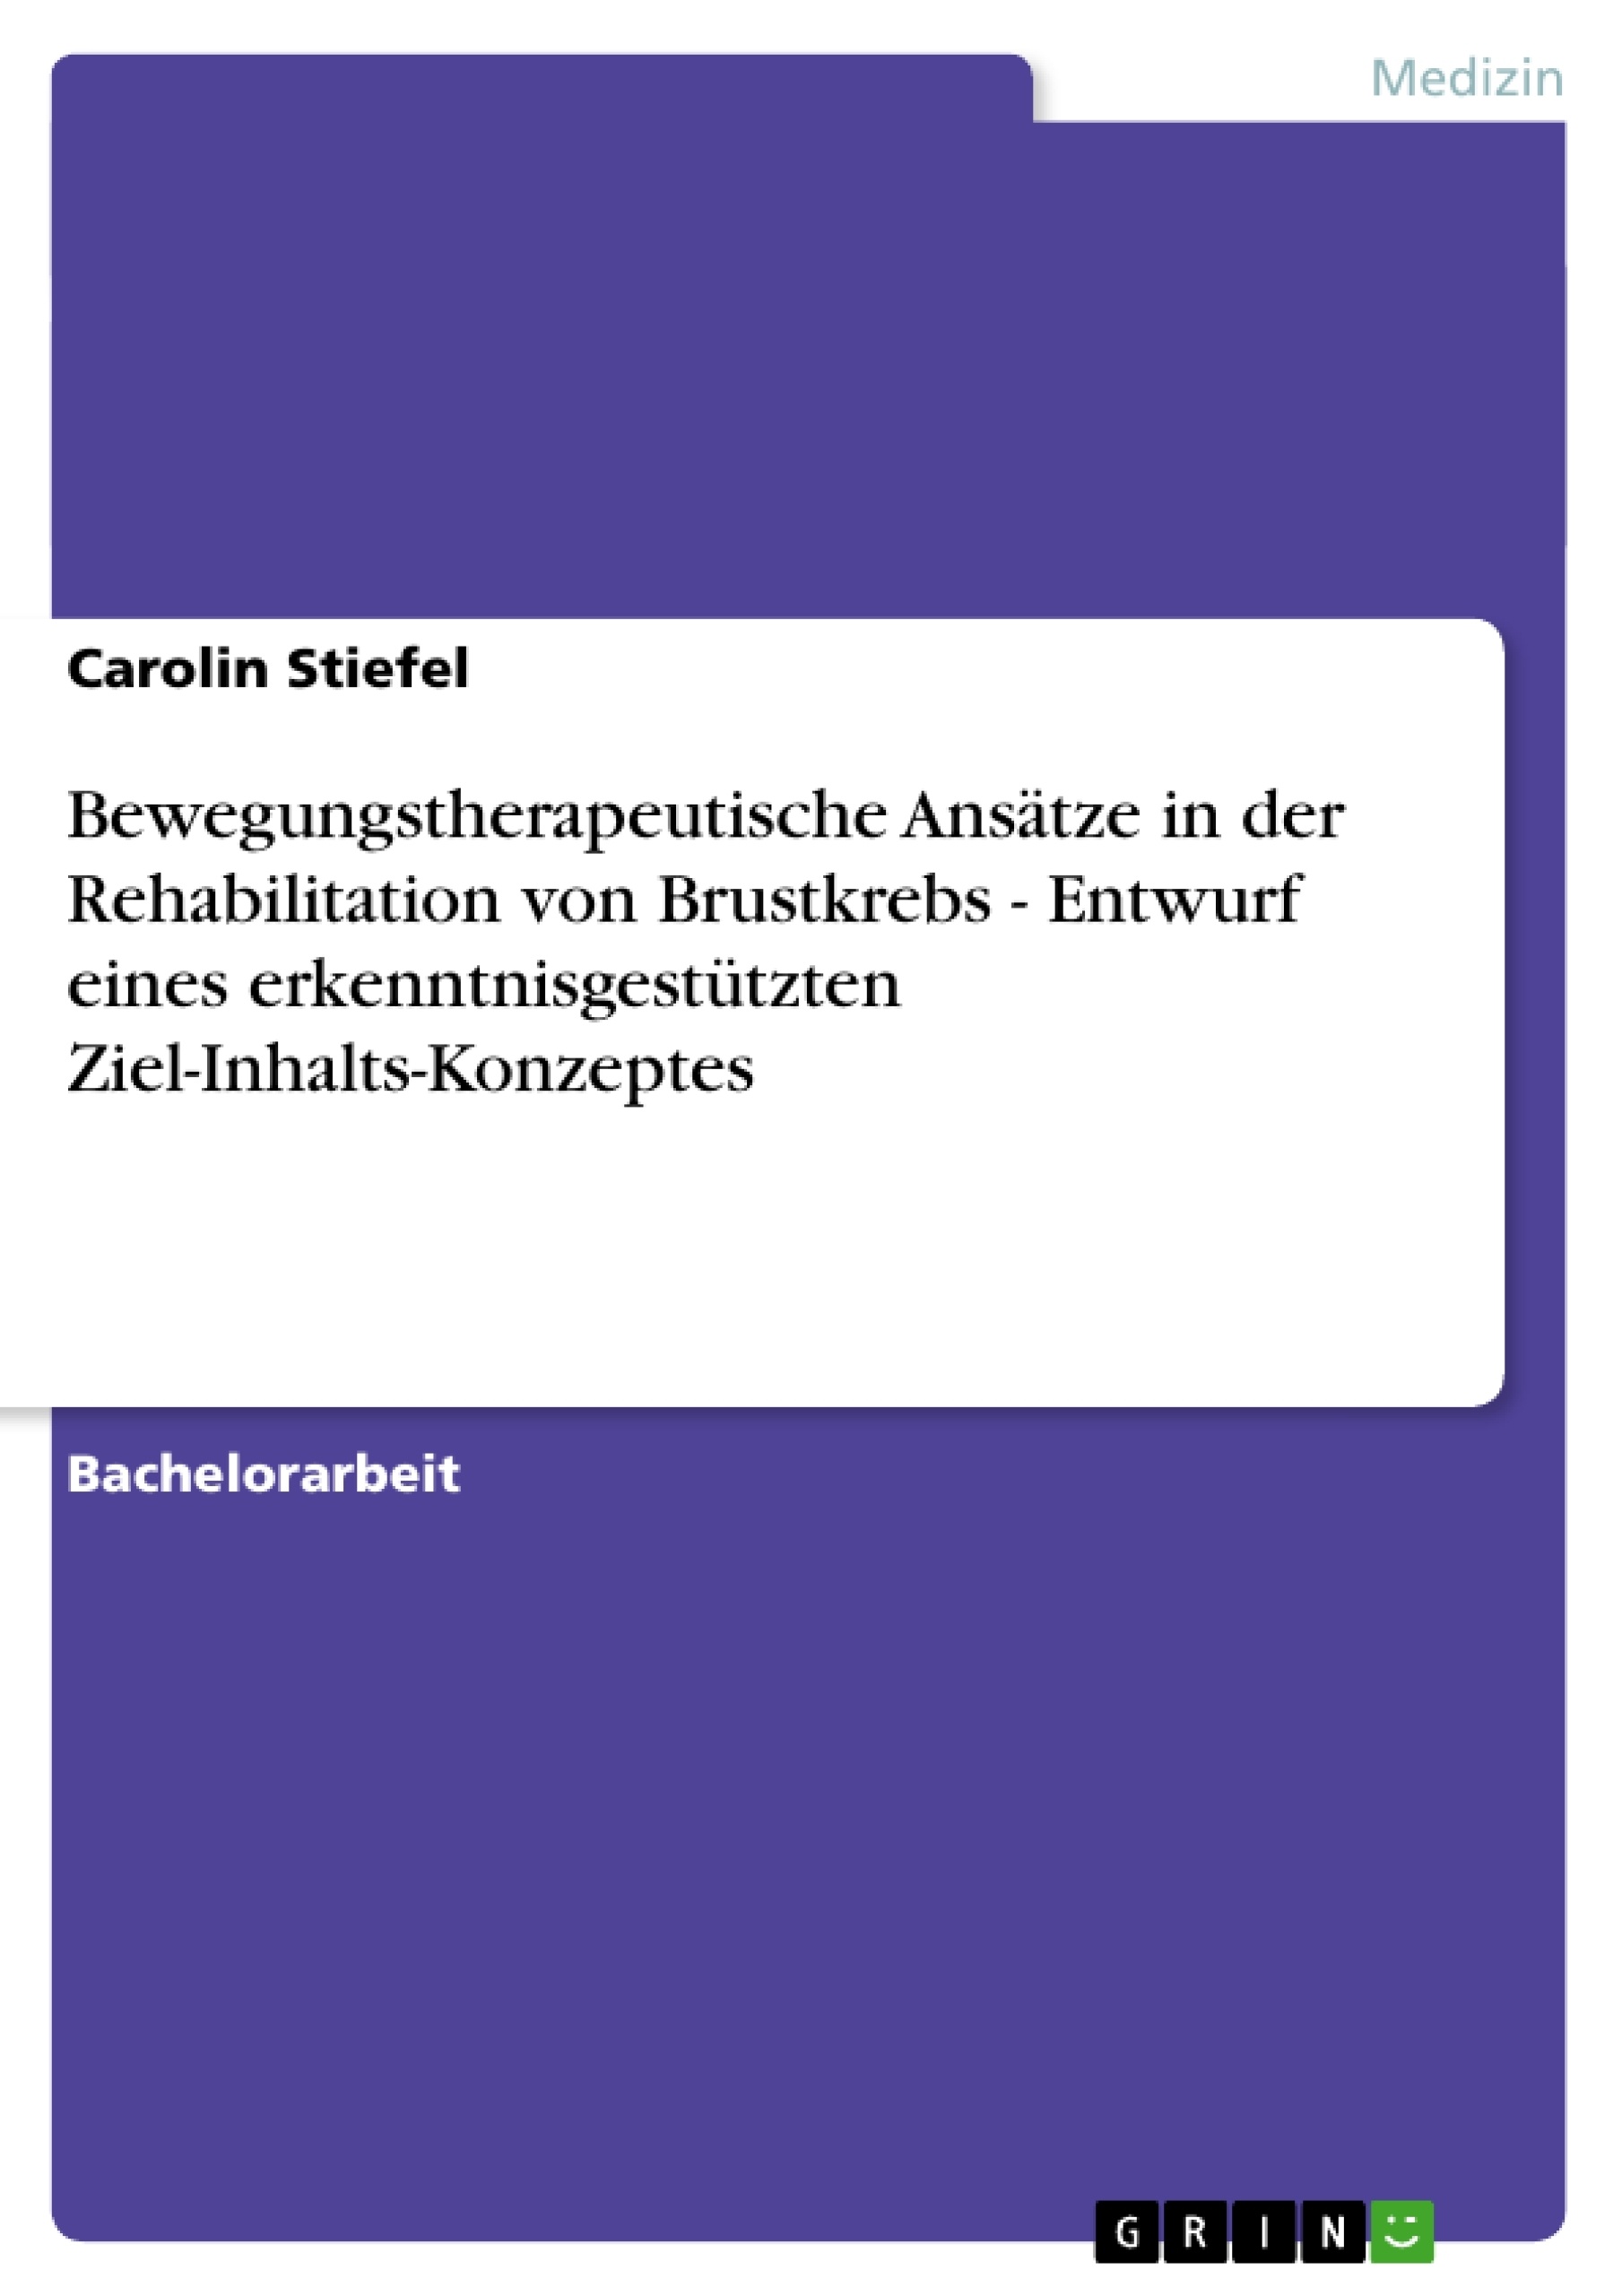 Title: Bewegungstherapeutische Ansätze in der Rehabilitation von Brustkrebs - Entwurf eines erkenntnisgestützten Ziel-Inhalts-Konzeptes